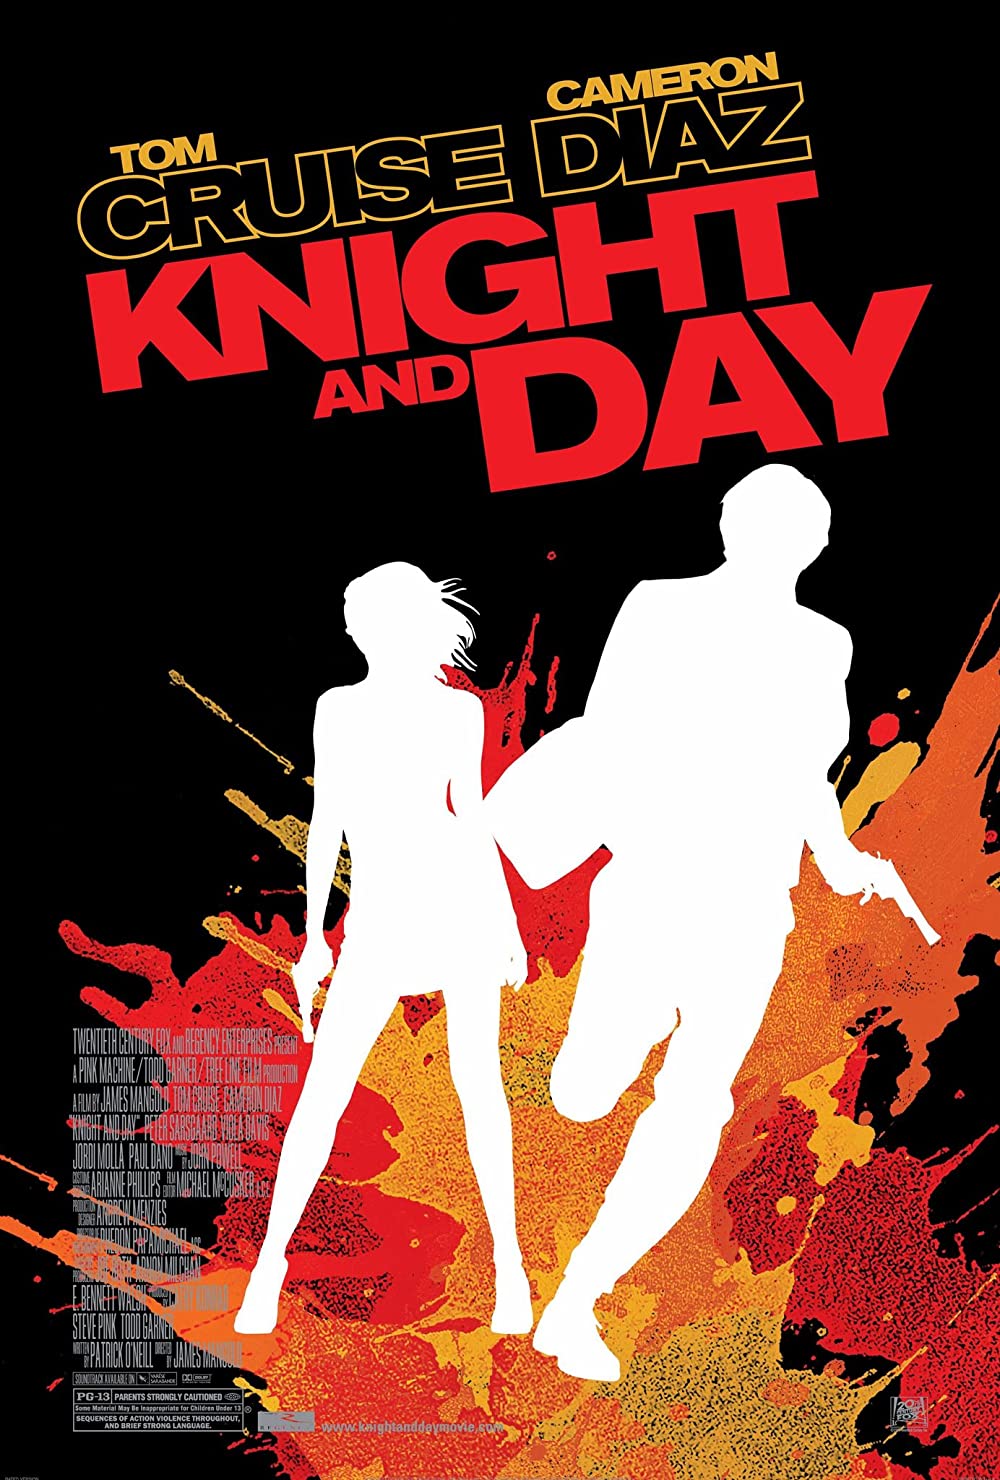 Filmbeschreibung zu Knight and Day